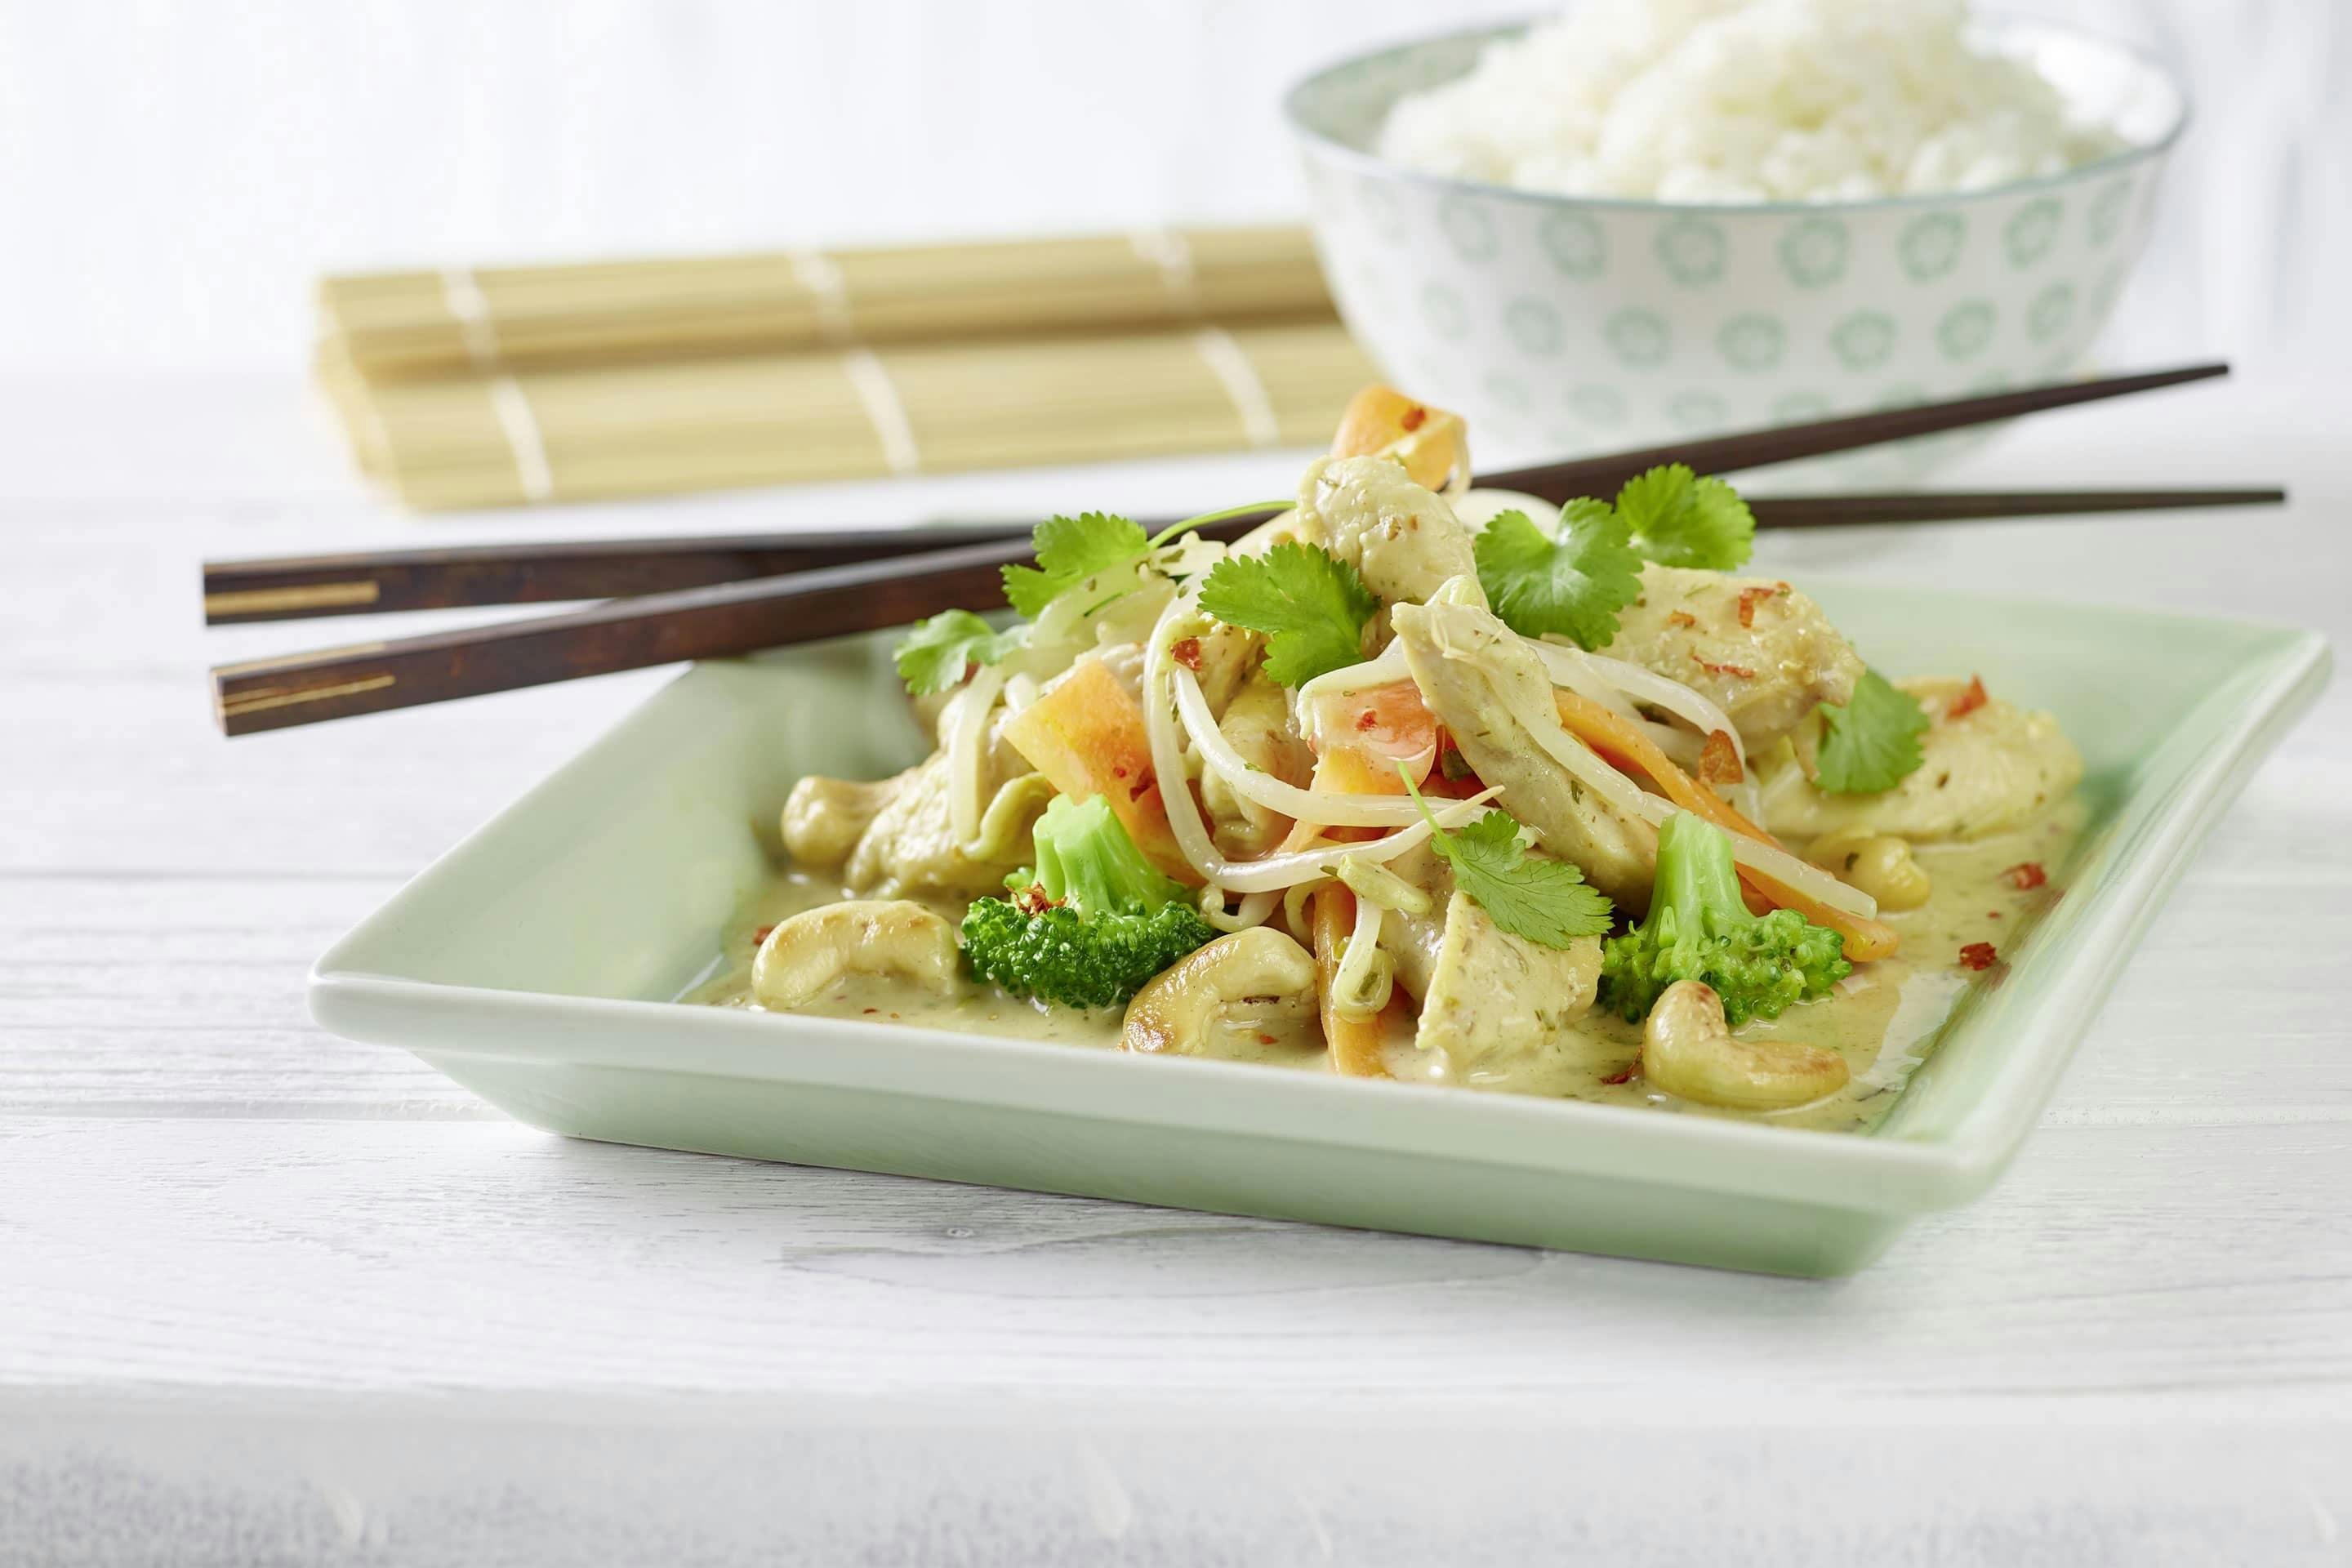 Chicken Thai mit asiatischen Kräutern, Broccoli und frischen Sojasprossen auf einem eckigen Teller mit Essstäbchen